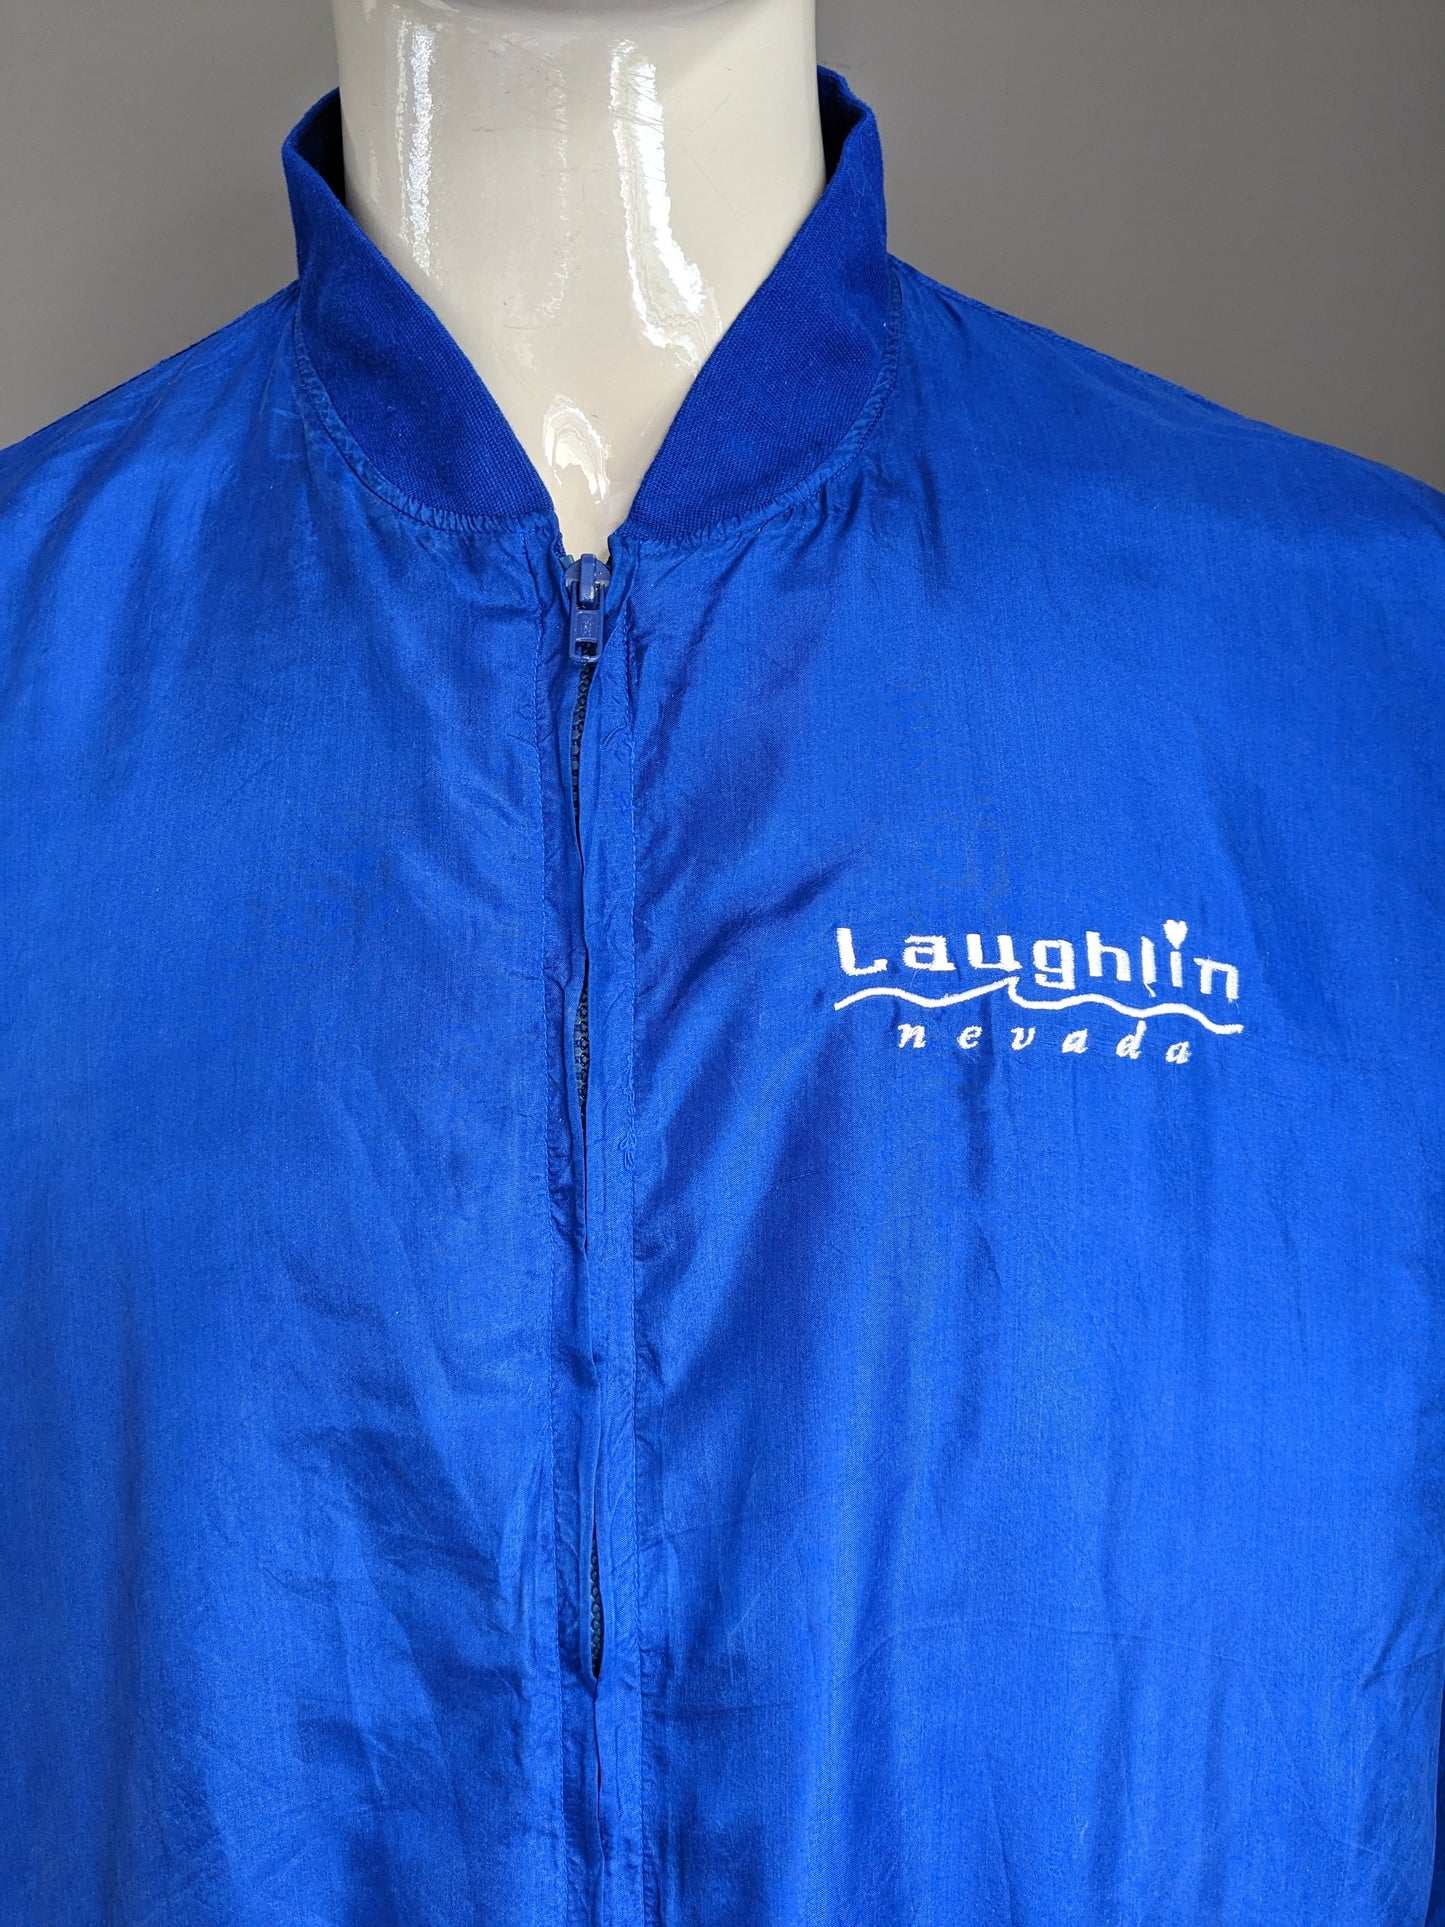 Vintage 80's-90's Active Zijden Pure sport jack. "Laughlin Nevada". Blauw gekleurd. Maat L / XL.